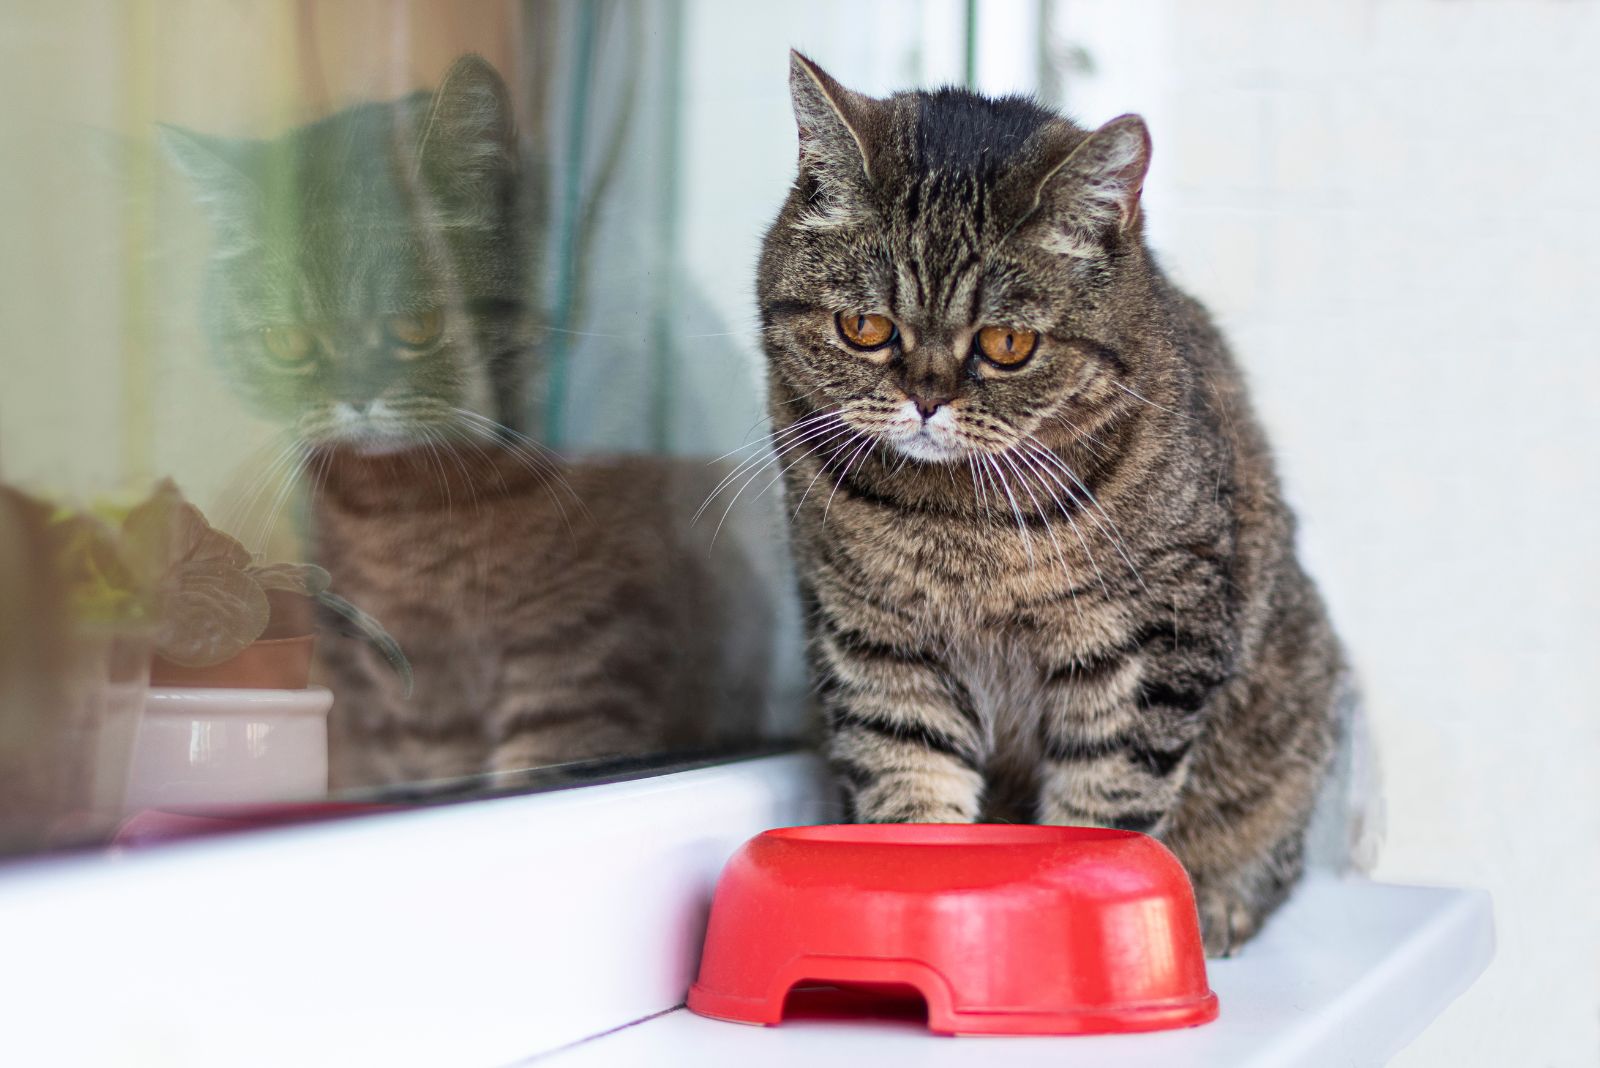 een verdrietige kat zit naast een rode kom met voedsel